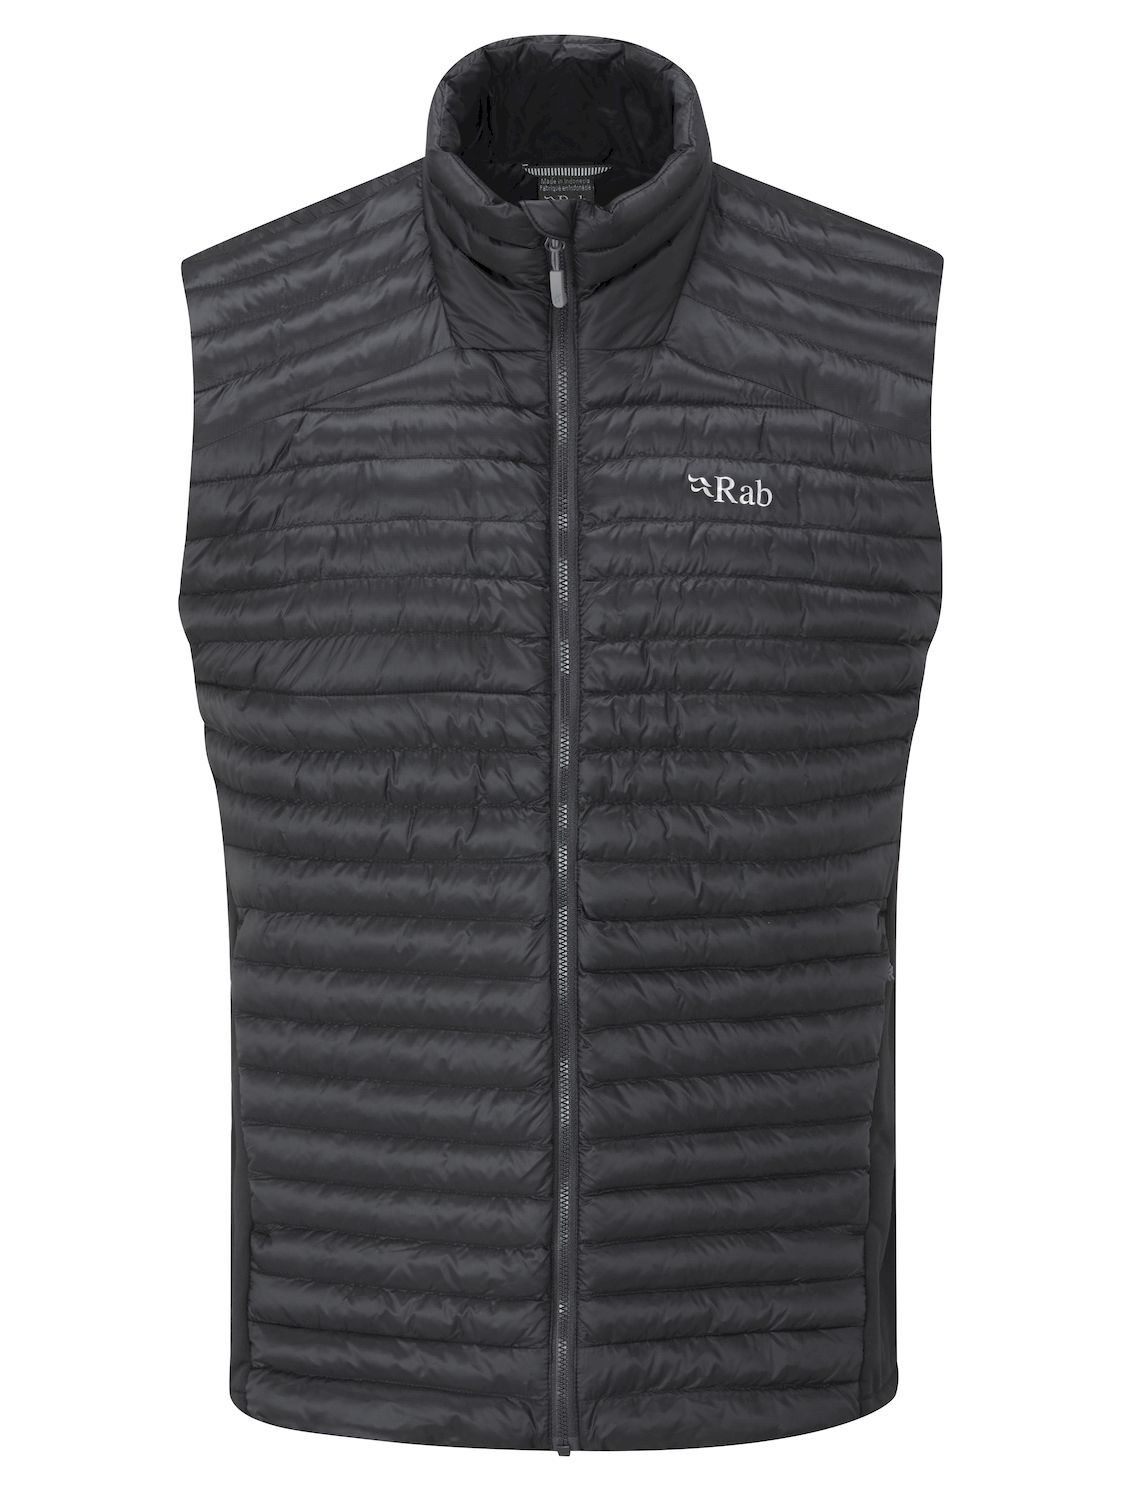 Rab Cirrus Flex 2.0 Vest - Synthetic vest - Men's